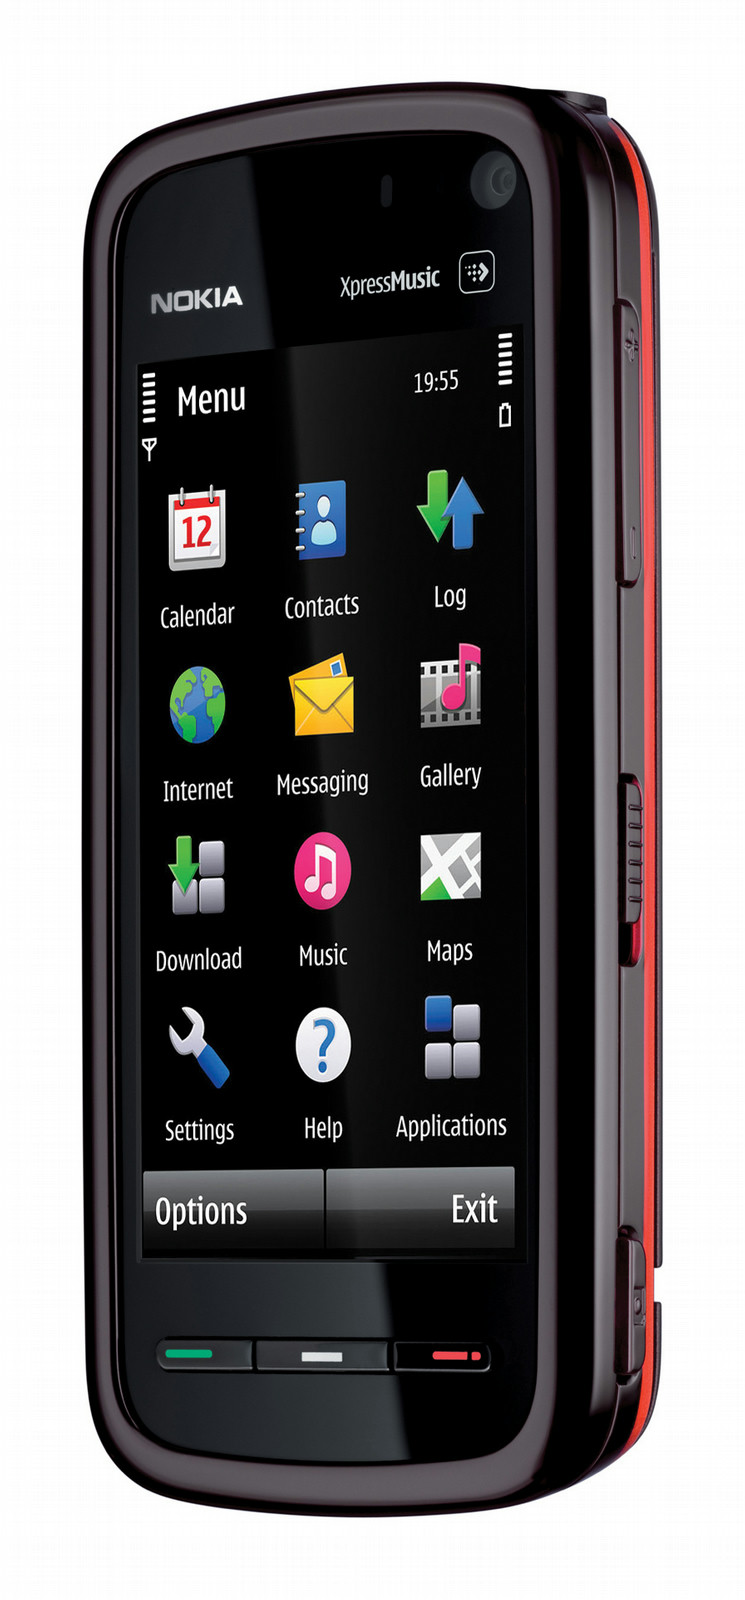 Нокиа сенсорные модели. Nokia 5800 XPRESSMUSIC. Нокиа сенсорный 5800. Nokia 5800 XPRESSMUSIC Black. Телефон Nokia 5800 XPRESSMUSIC.